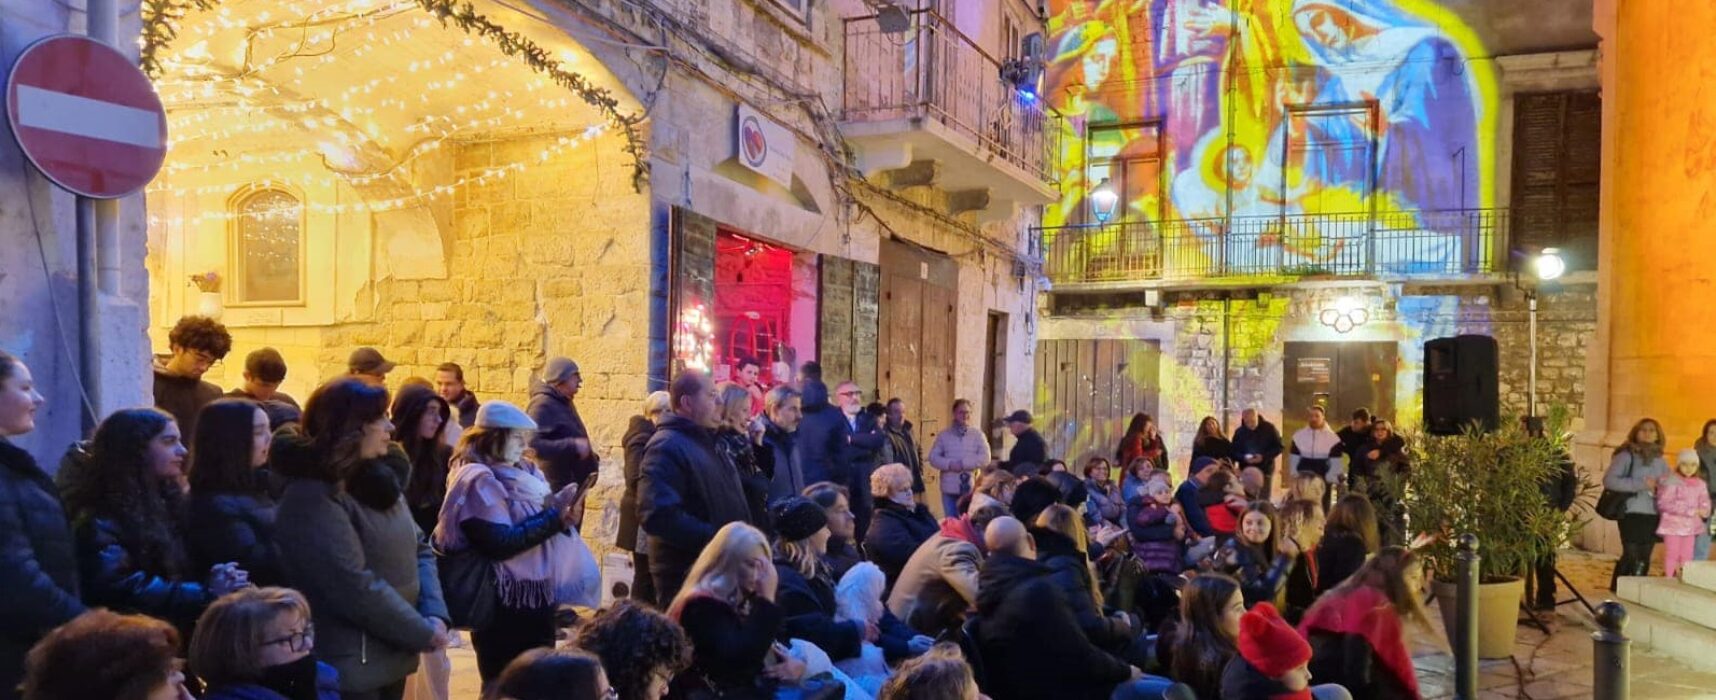 Borgo del Natale, due serate di musica nel centro storico per festeggiare l’Epifania